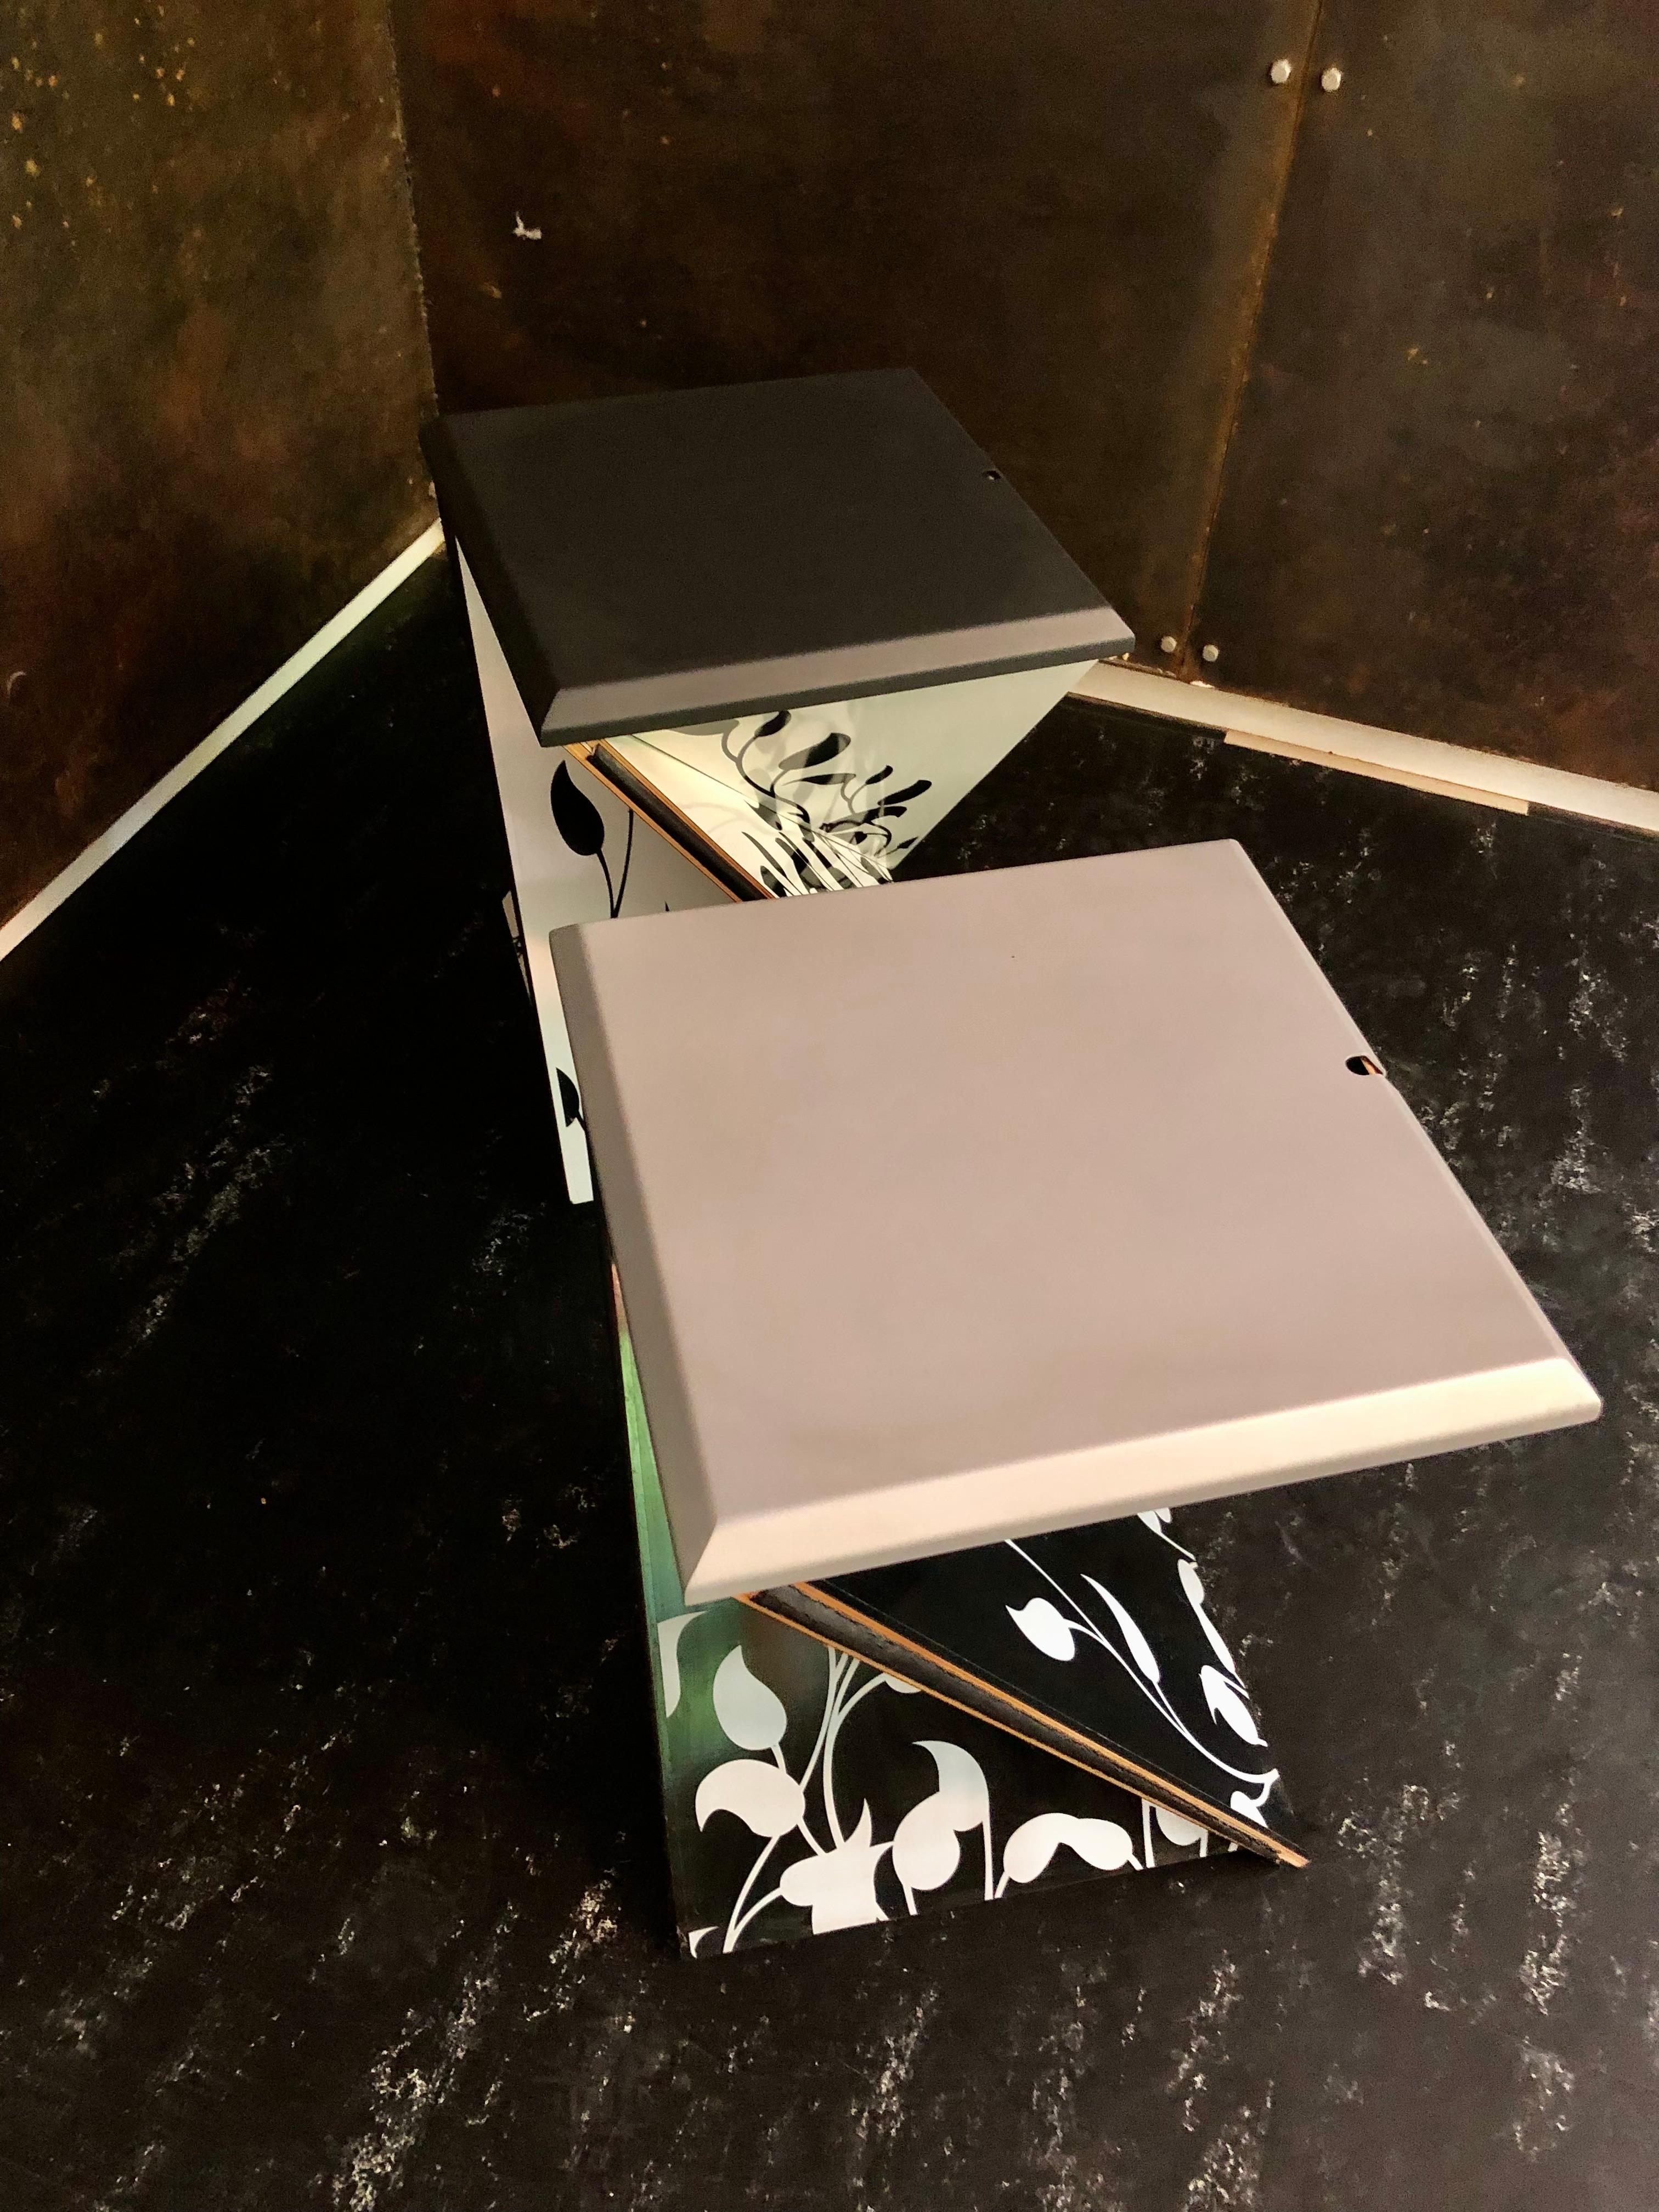 Danese Milano Kada klappbarer Hocker / Beistelltisch entworfen von Yves Behar. Zur Verwendung als Hocker oder Beistelltisch ist die Platte oder der Sitz abnehmbar und kann als Tablett verwendet werden. Es besteht aus Schwarz und Weiß  Laminiertes